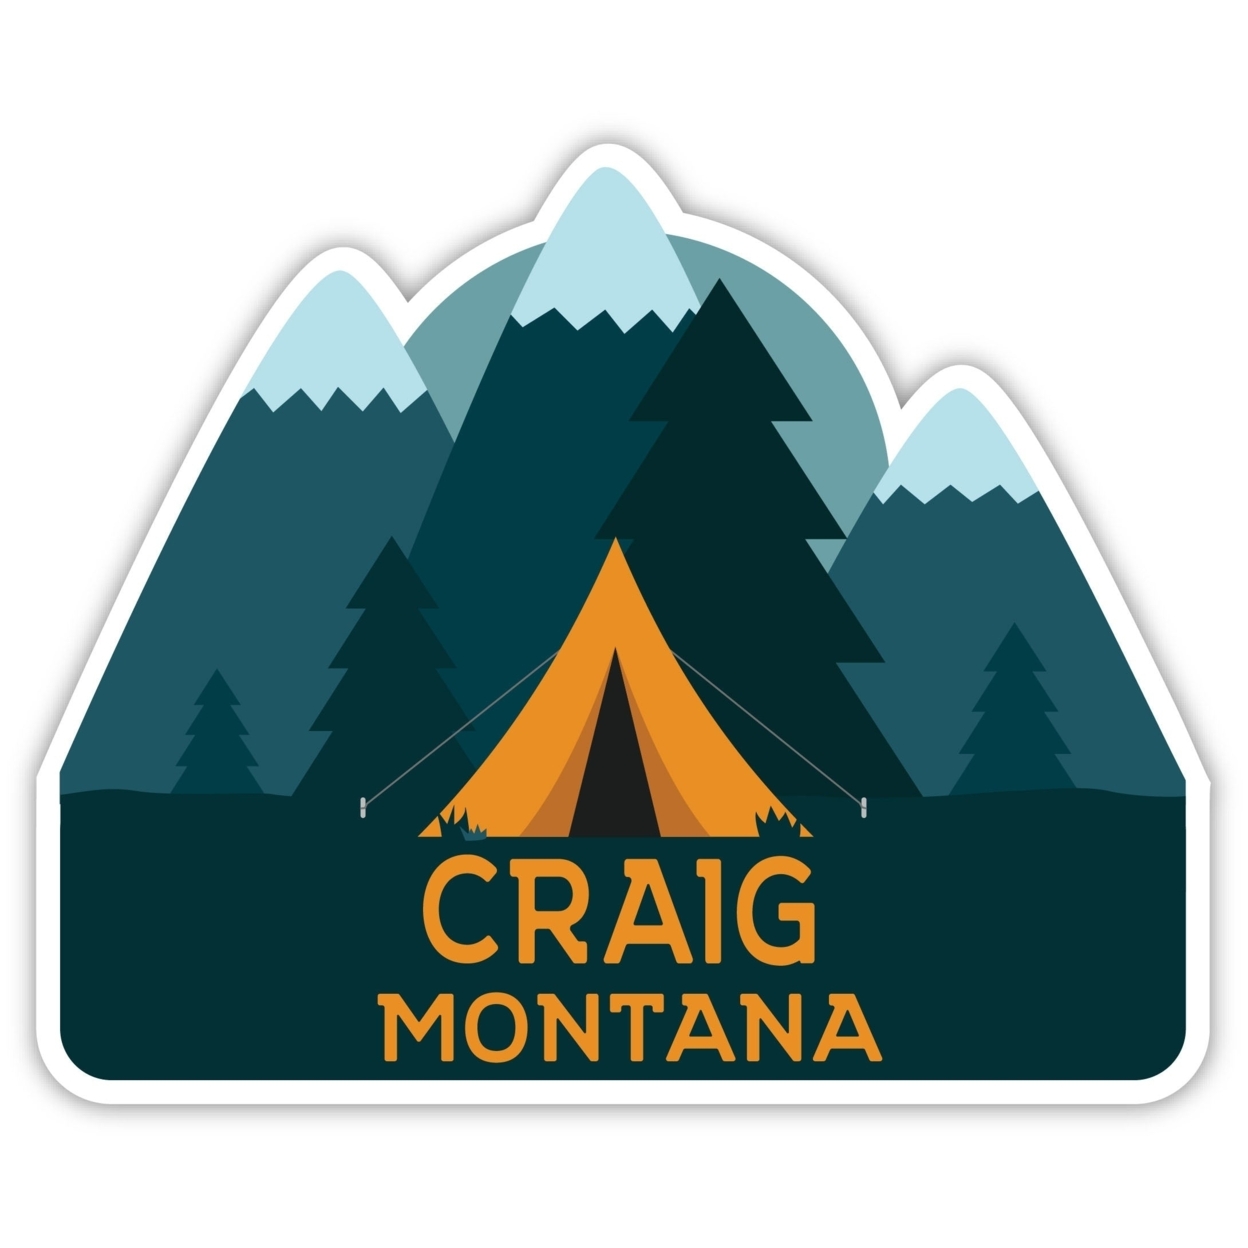 Craig Montana Souvenir Decorative Stickers (Choose Theme And Size) - Single Unit, 4-Inch, Tent